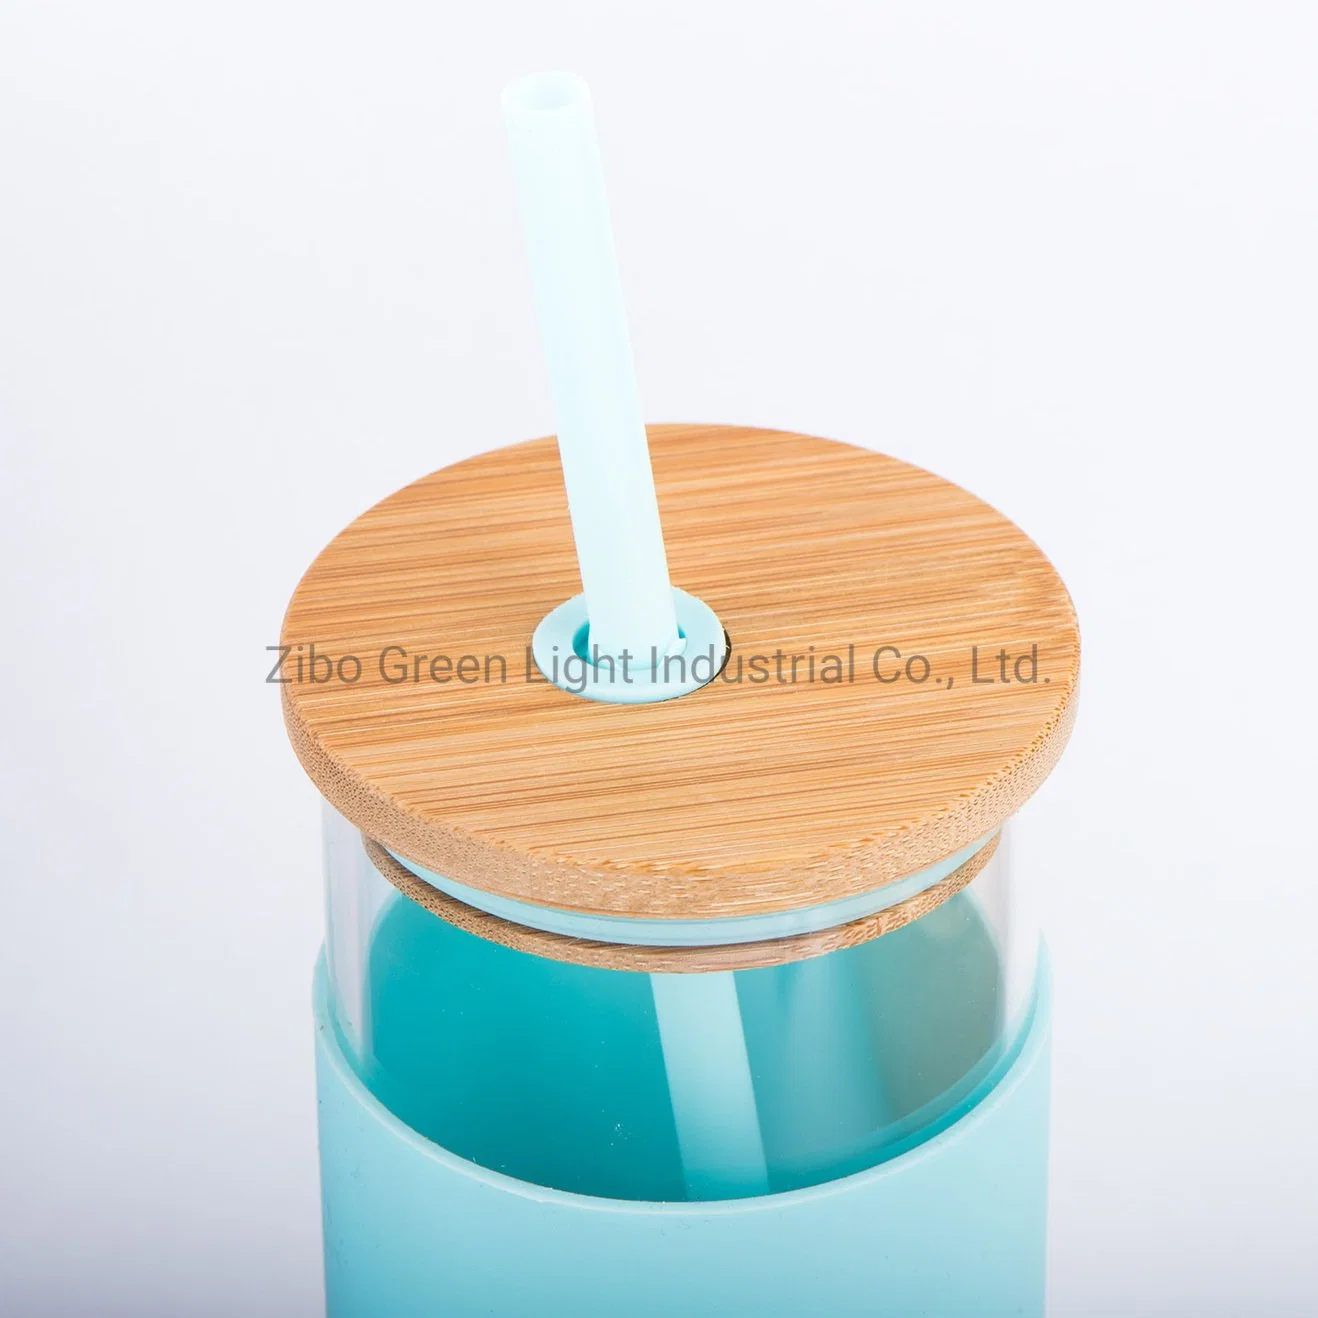 500 мл боросиликатного стекла чашки питьевой стекла для напитков с силиконовый чехол из бамбука и пластиковой крышки колпака соломы